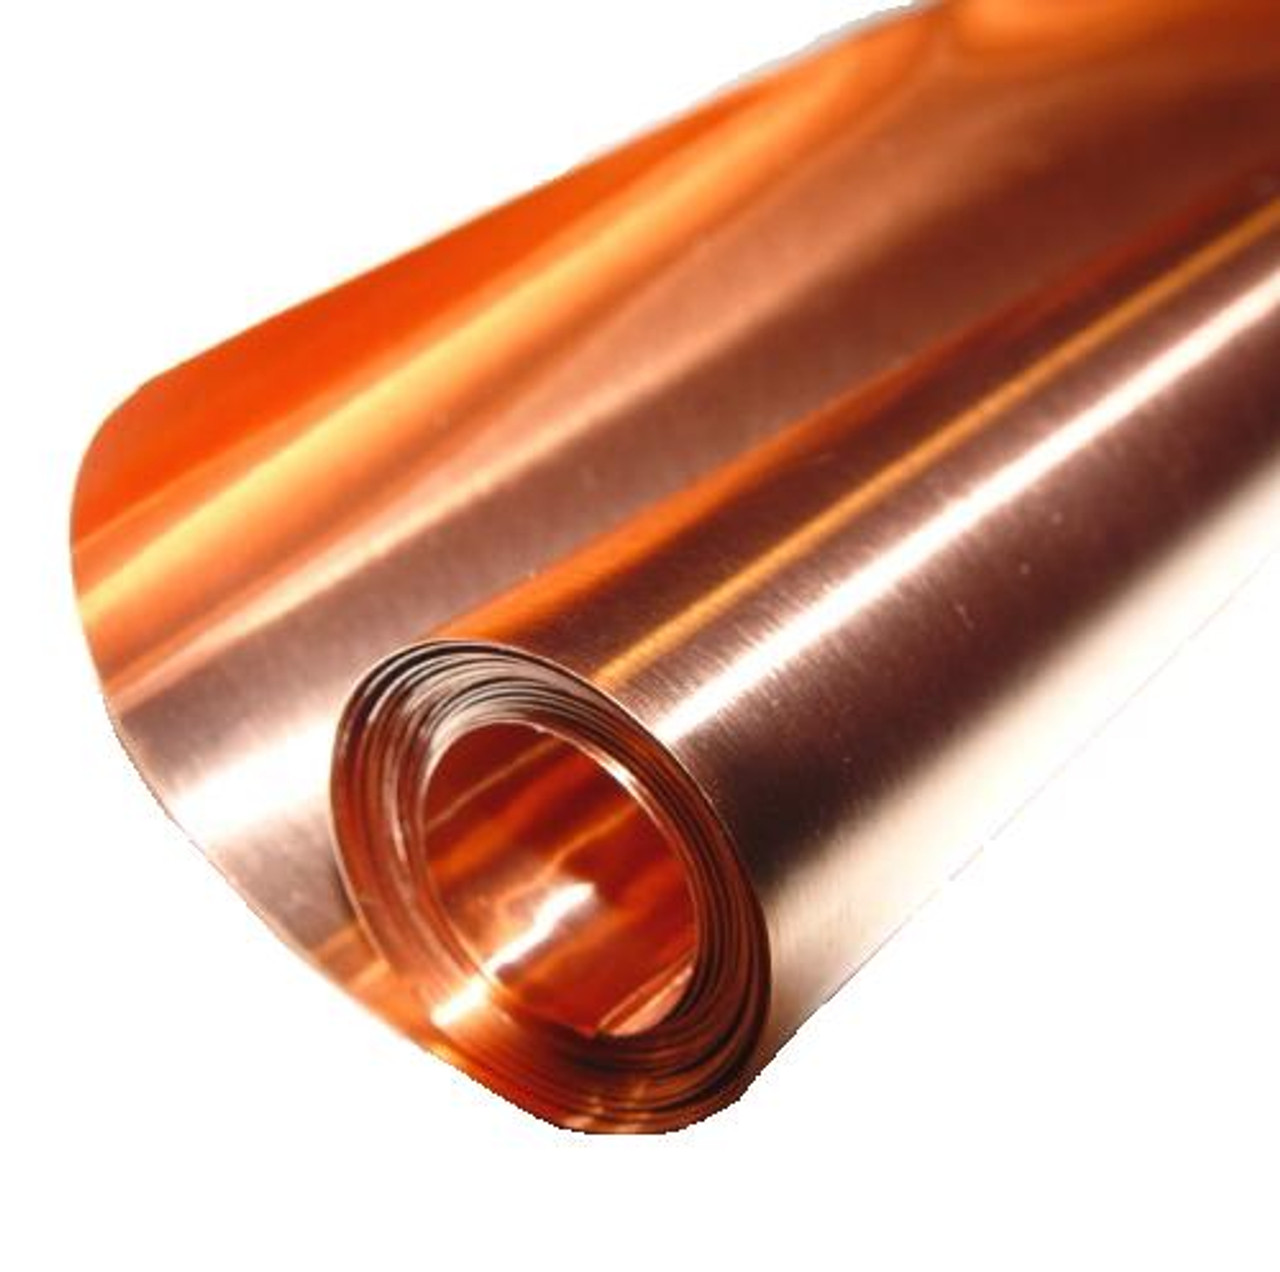 6 X 6'/ 10 mil (30 ga.) Copper Sheet | Basic Copper